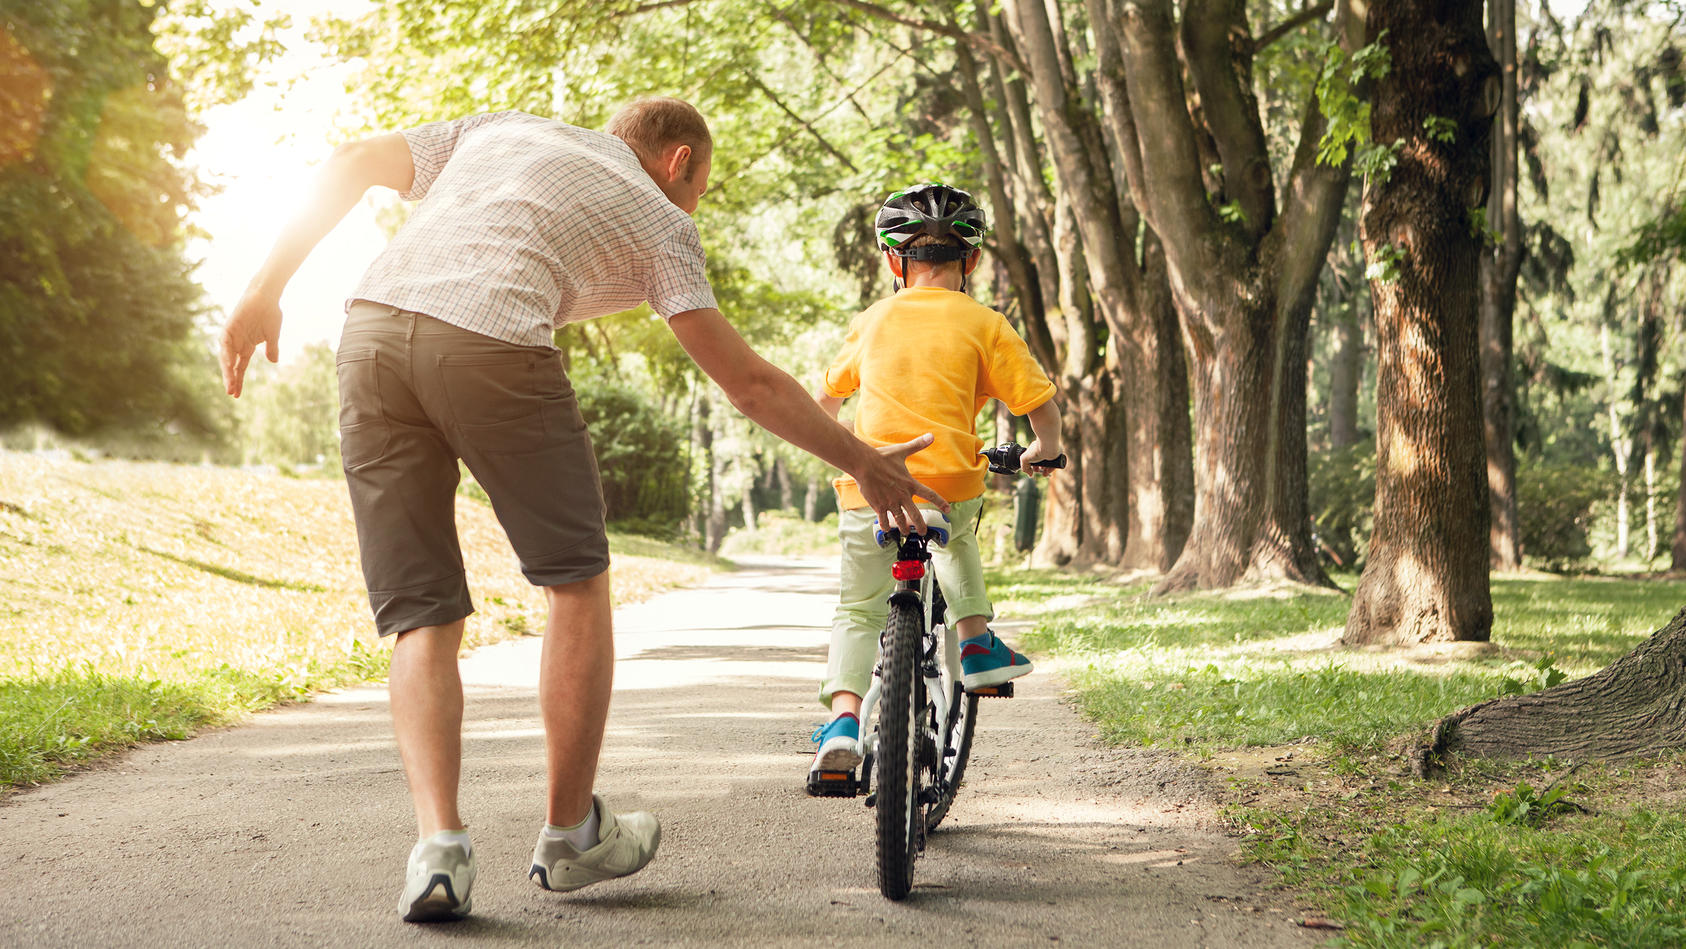 dürfen eltern auf fußgängerweg mit kind fahrrad fahren